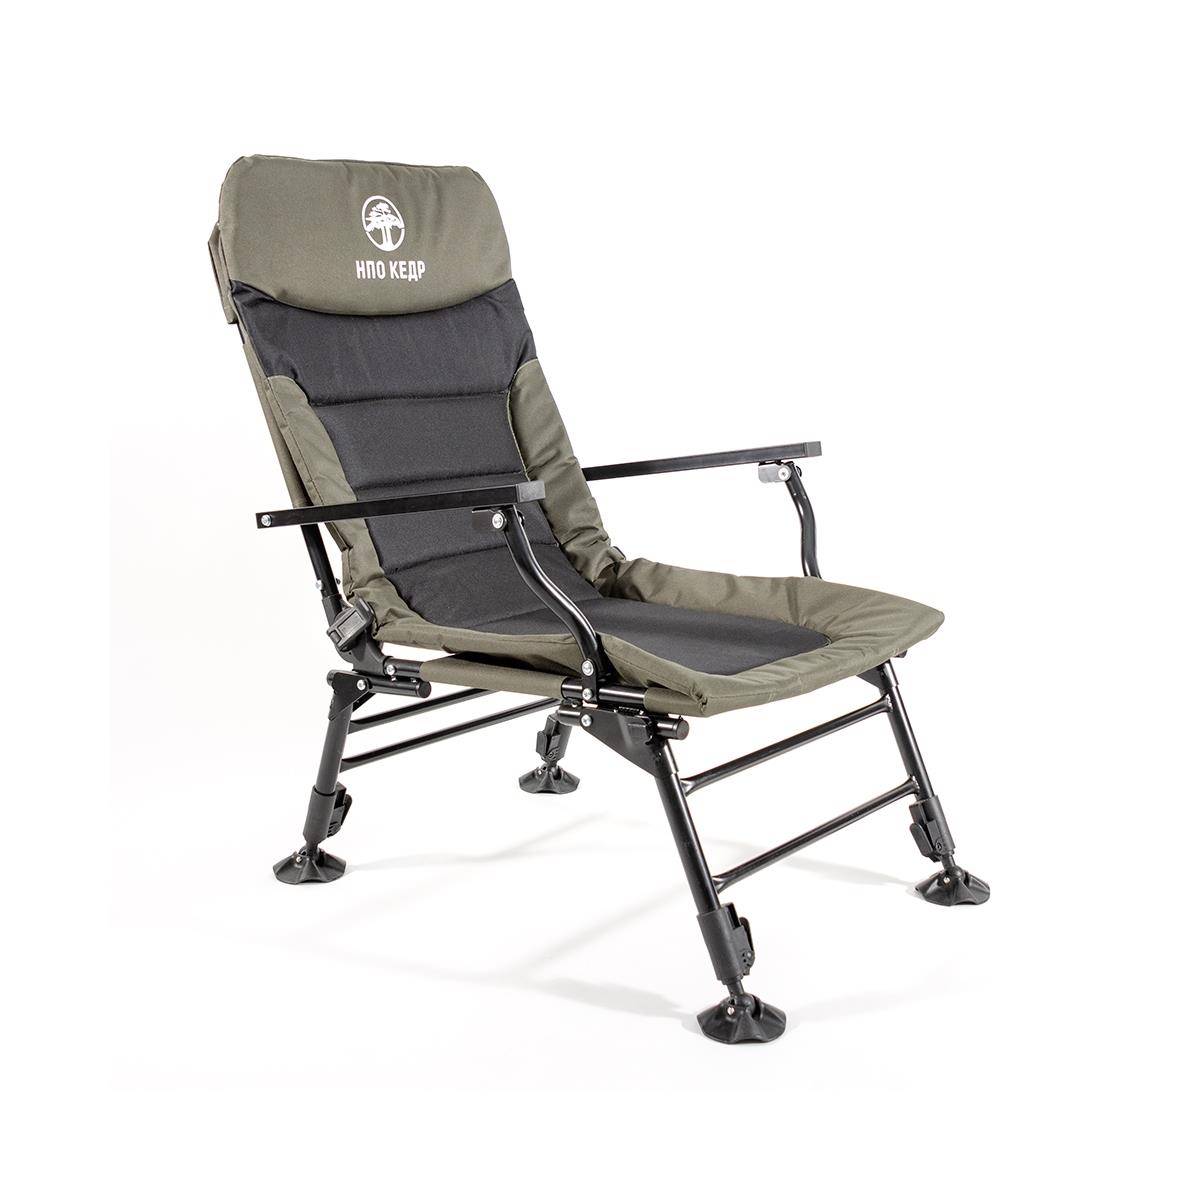 кресло карповое с подлокотниками skc 01 кедр Кресло карповое с подлокотниками (SKC-01)  Кедр